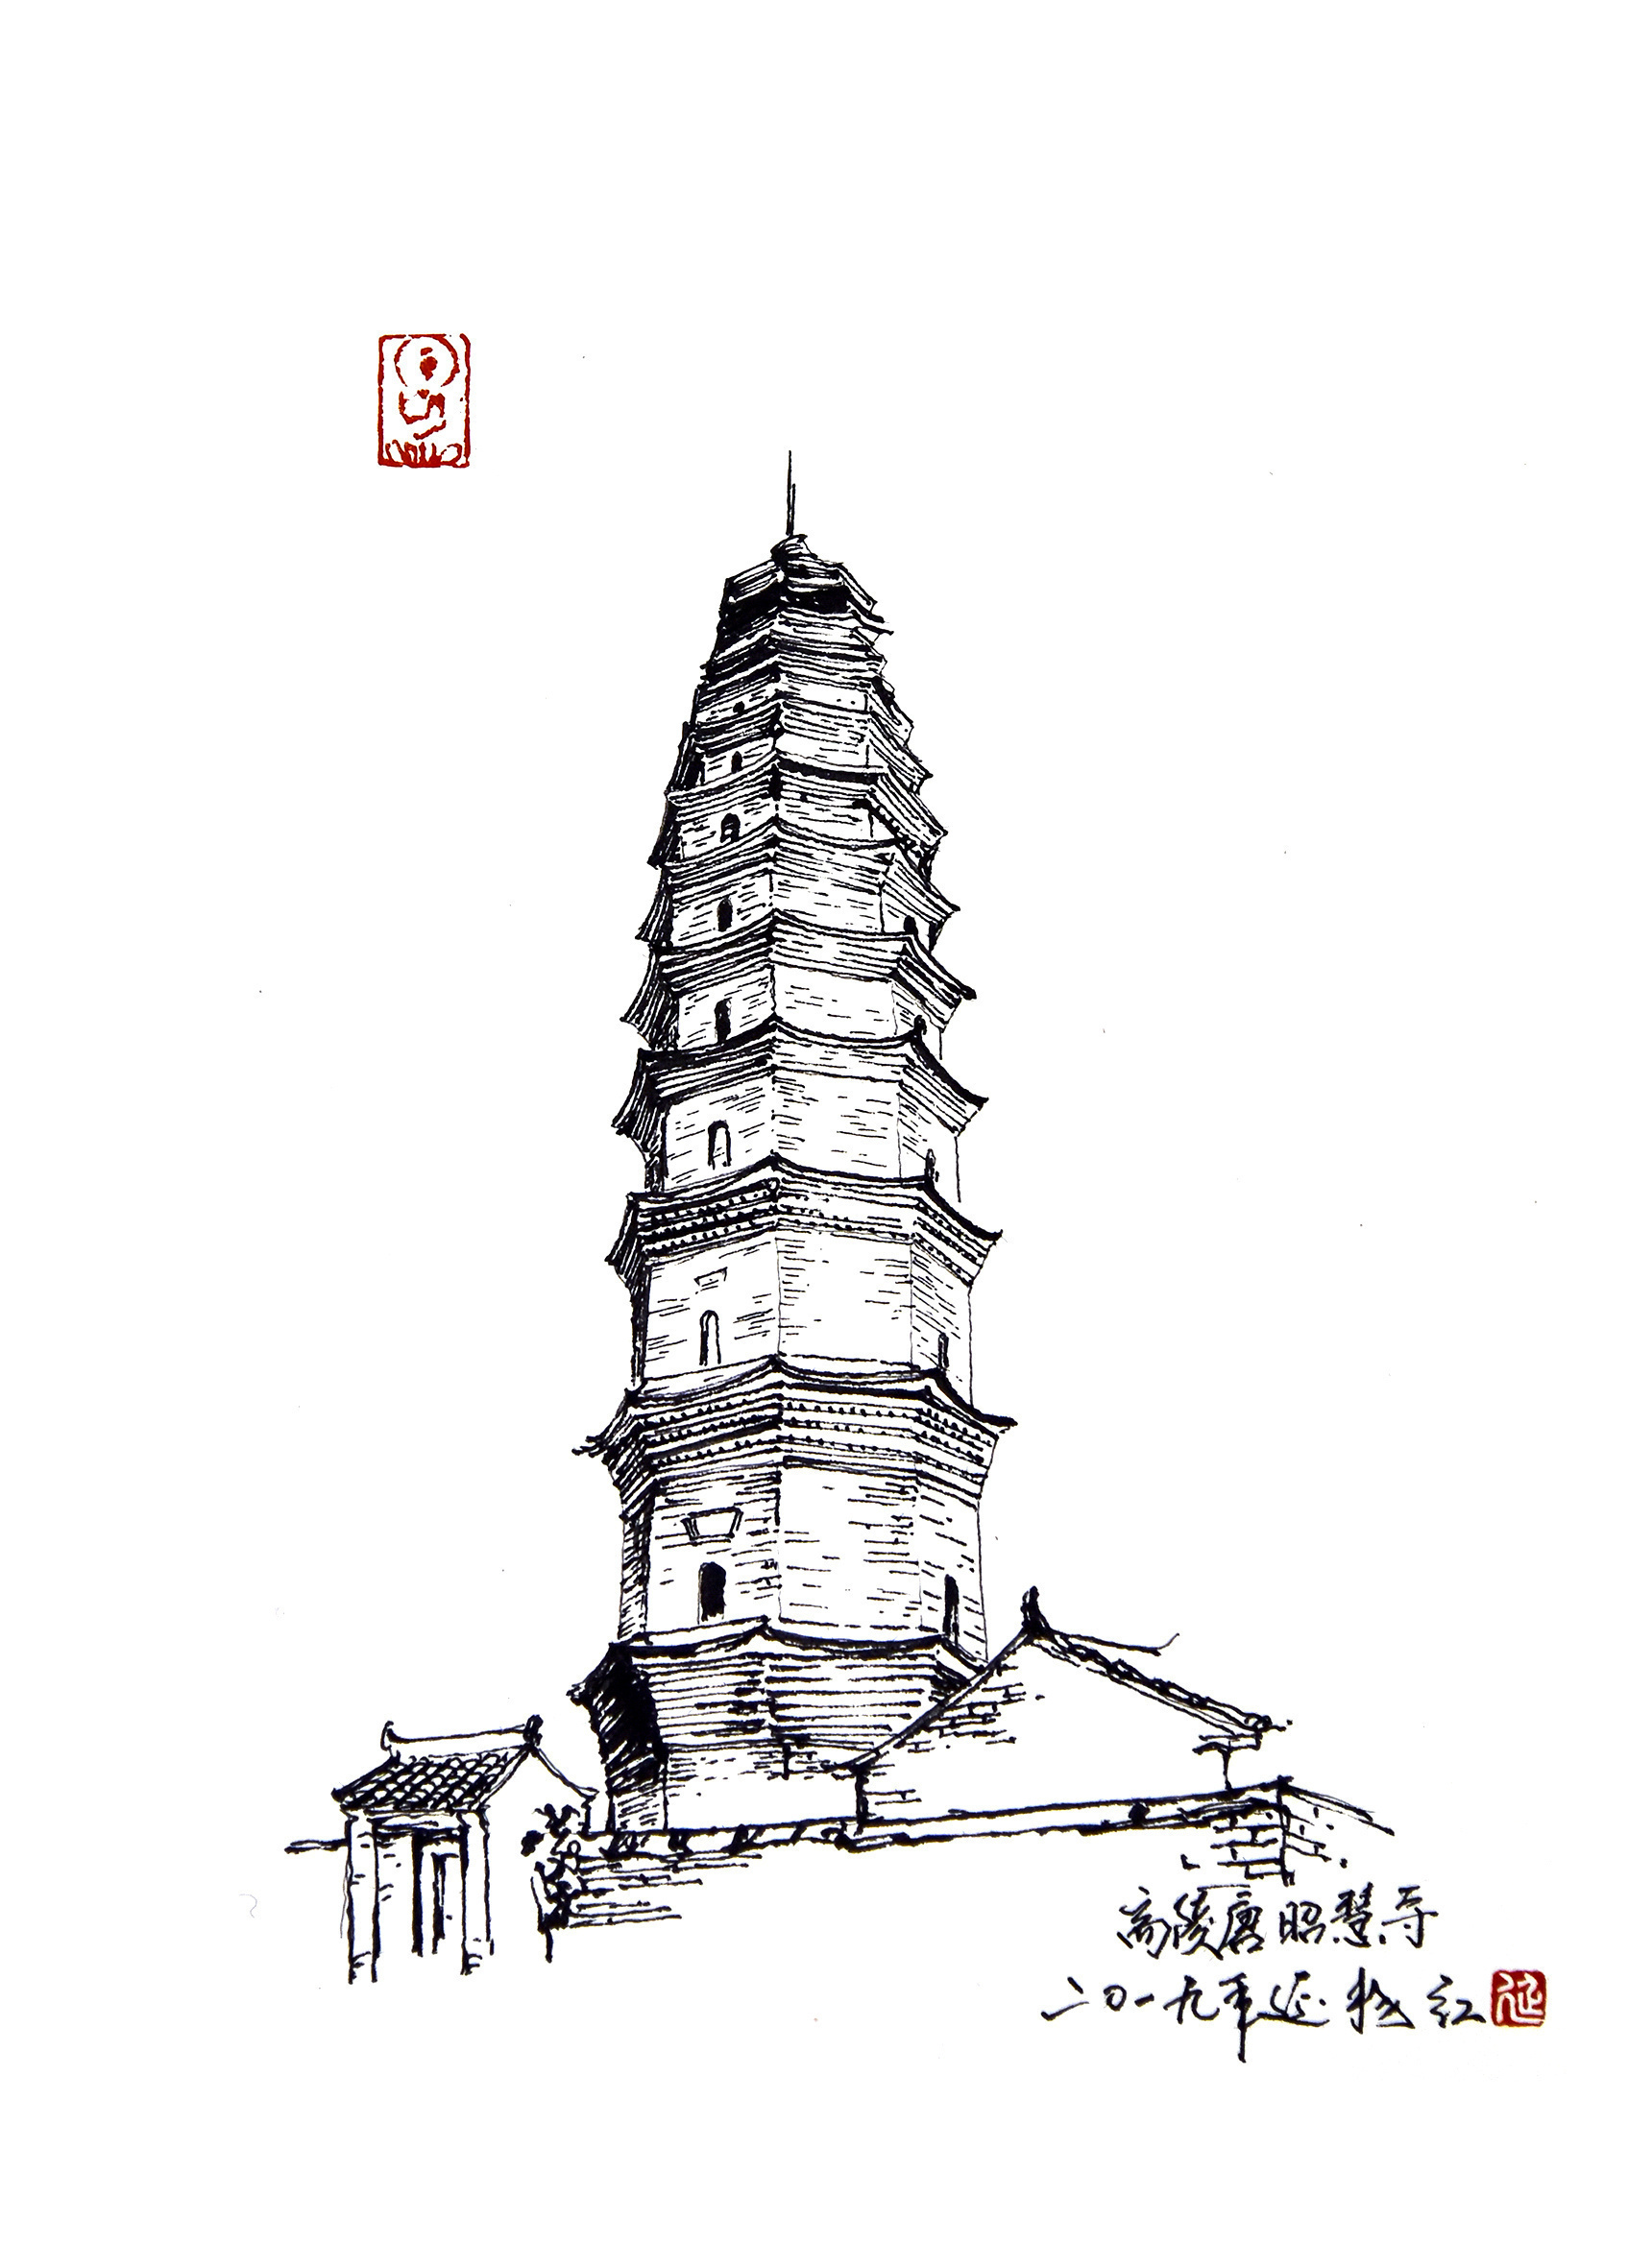 敦煌寺塔位于西安市汉长安城东墙宣平门遗址外南侧,今汉城乡青西村南